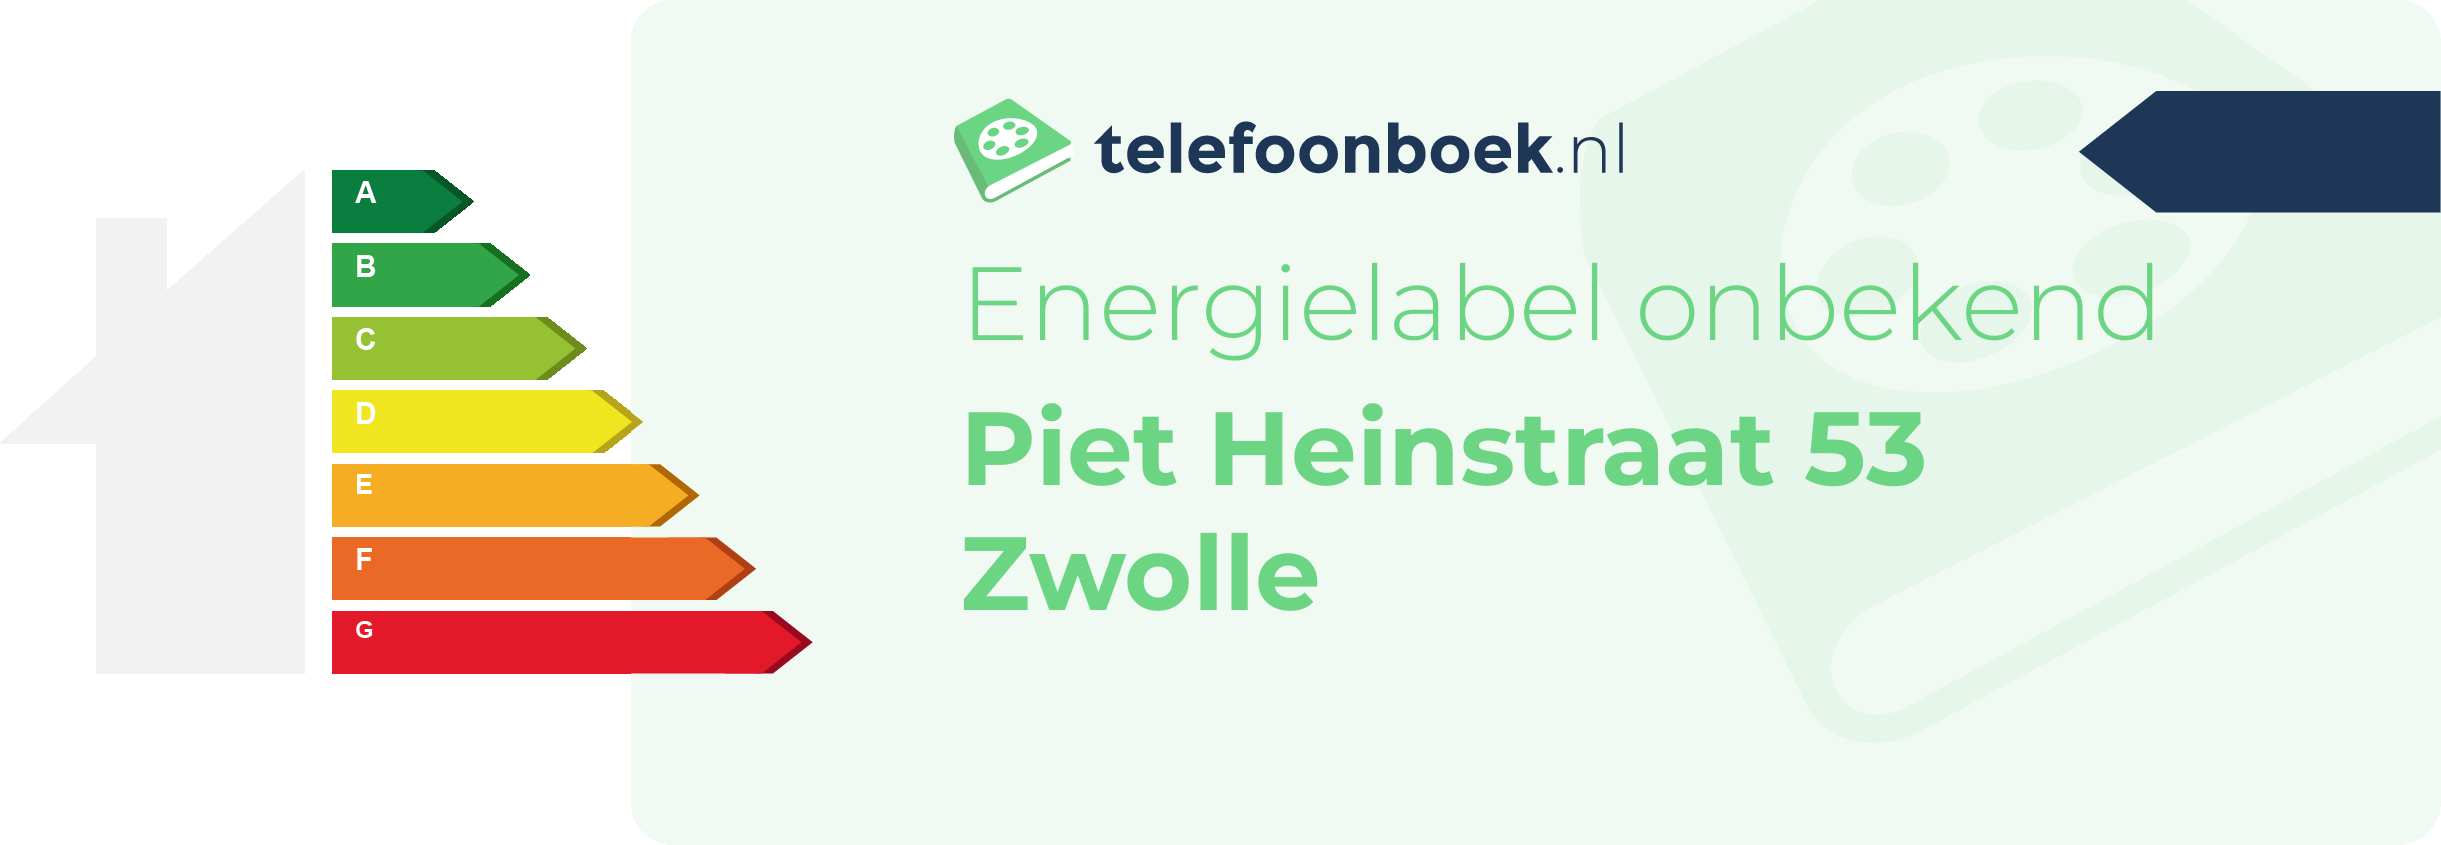 Energielabel Piet Heinstraat 53 Zwolle